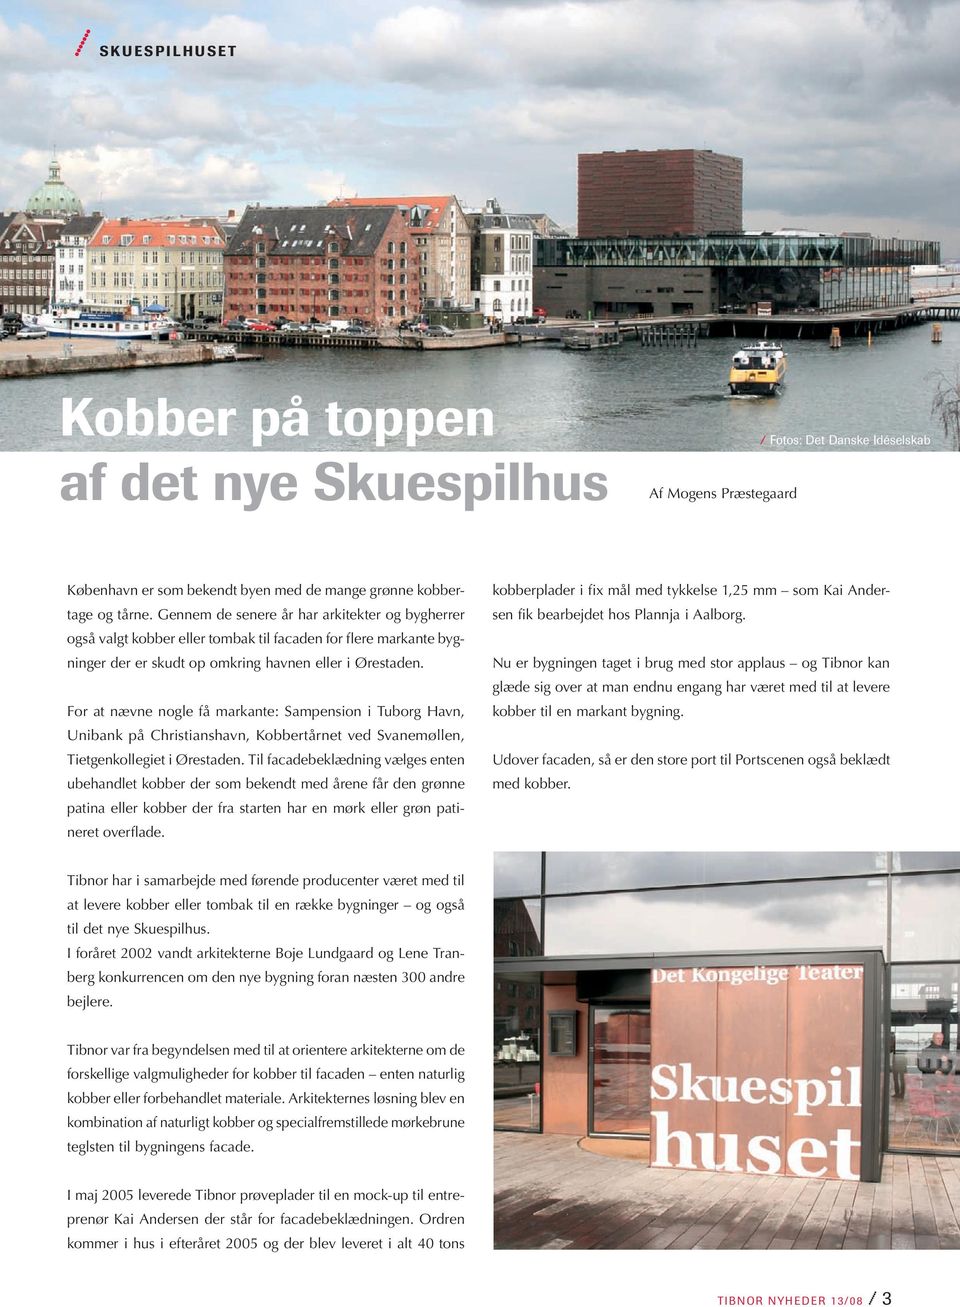 For at nævne nogle få markante: Sampension i Tuborg Havn, Unibank på Christianshavn, Kobbertårnet ved Svanemøllen, Tietgenkollegiet i Ørestaden.